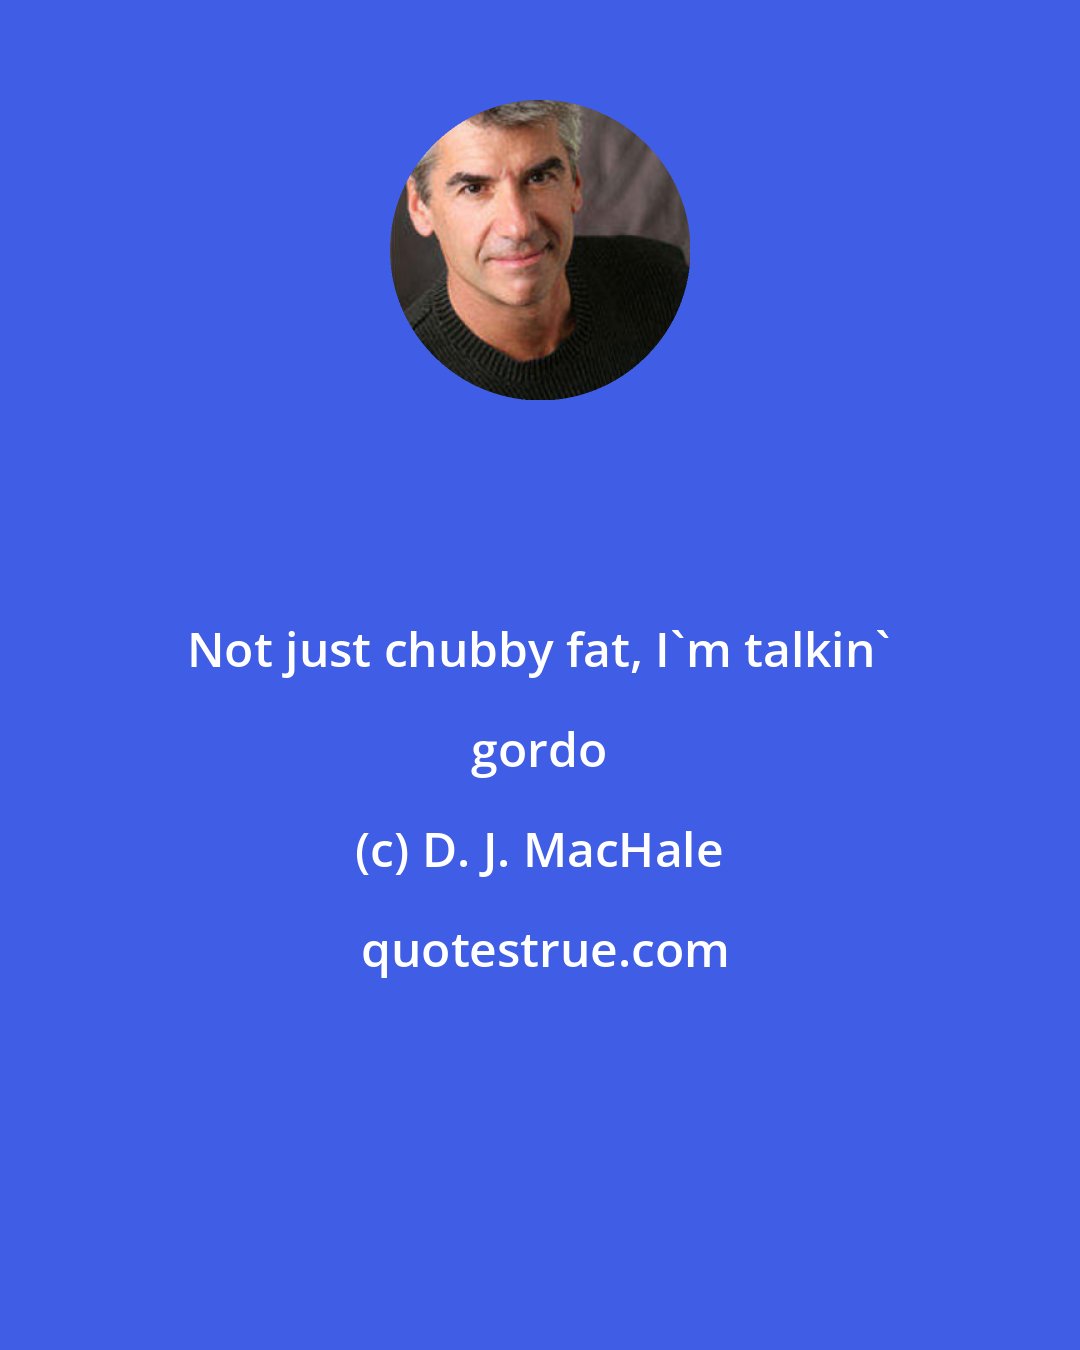 D. J. MacHale: Not just chubby fat, I'm talkin' gordo